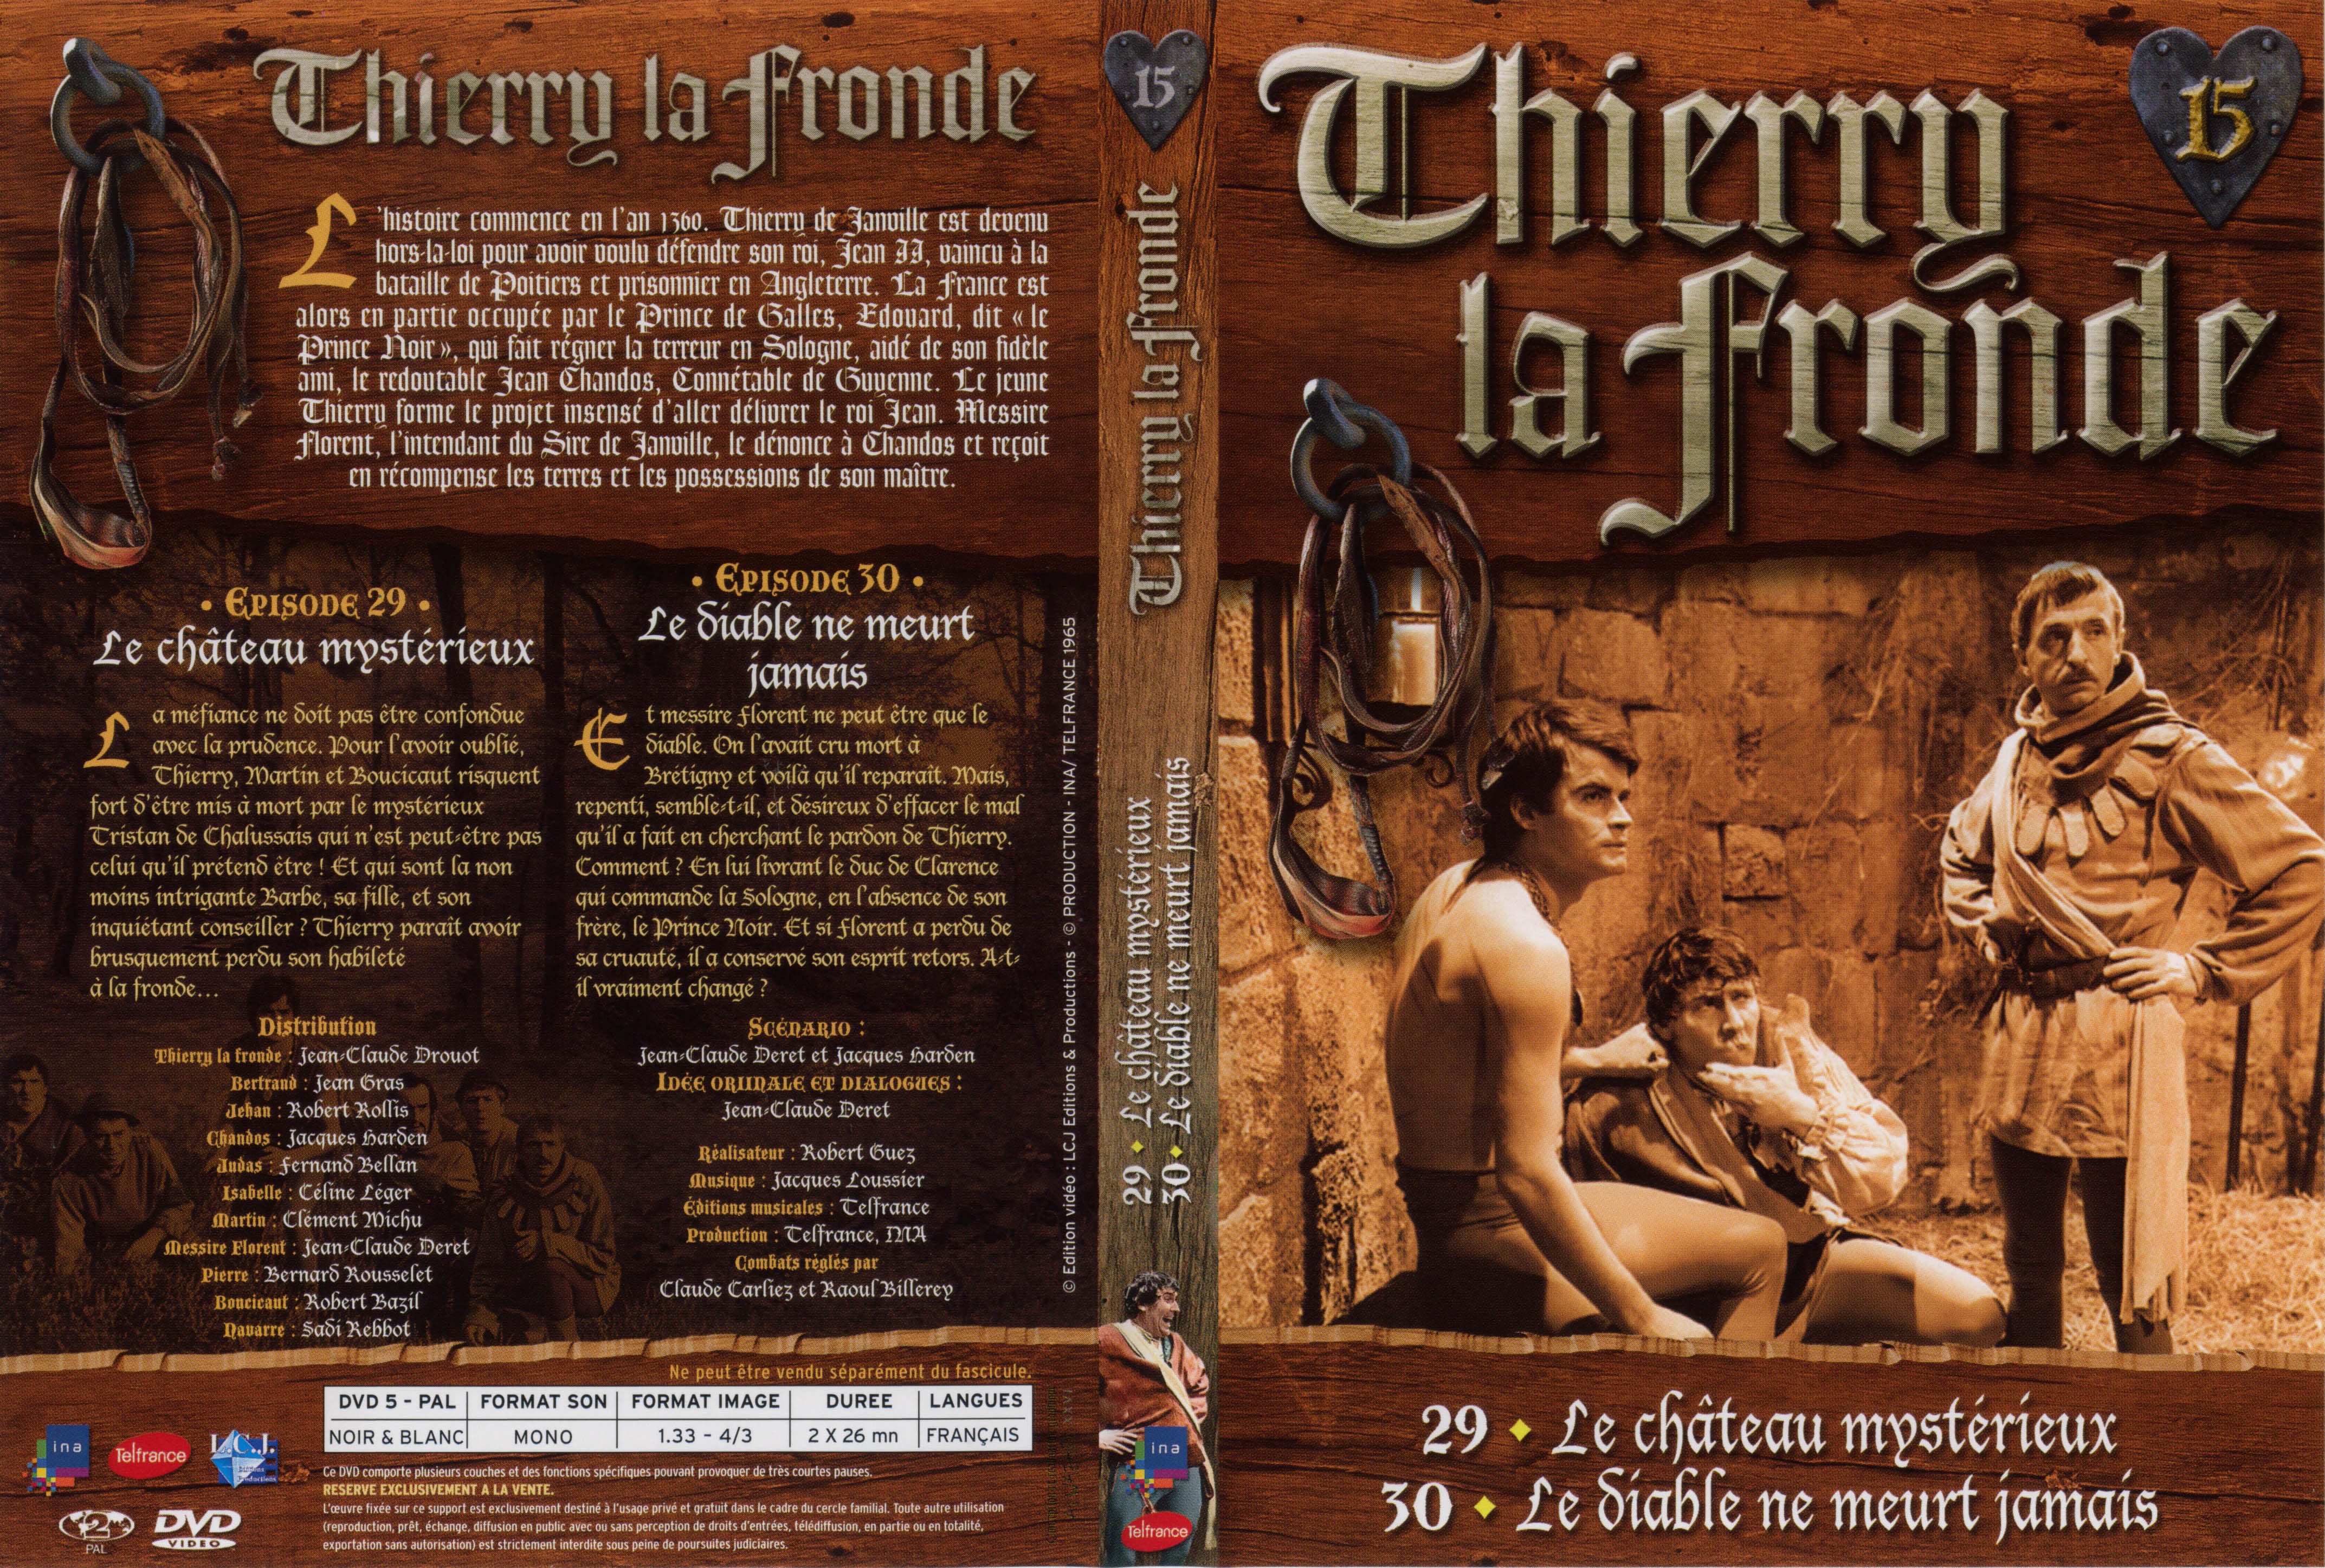 Jaquette DVD Thierry la Fronde vol 15